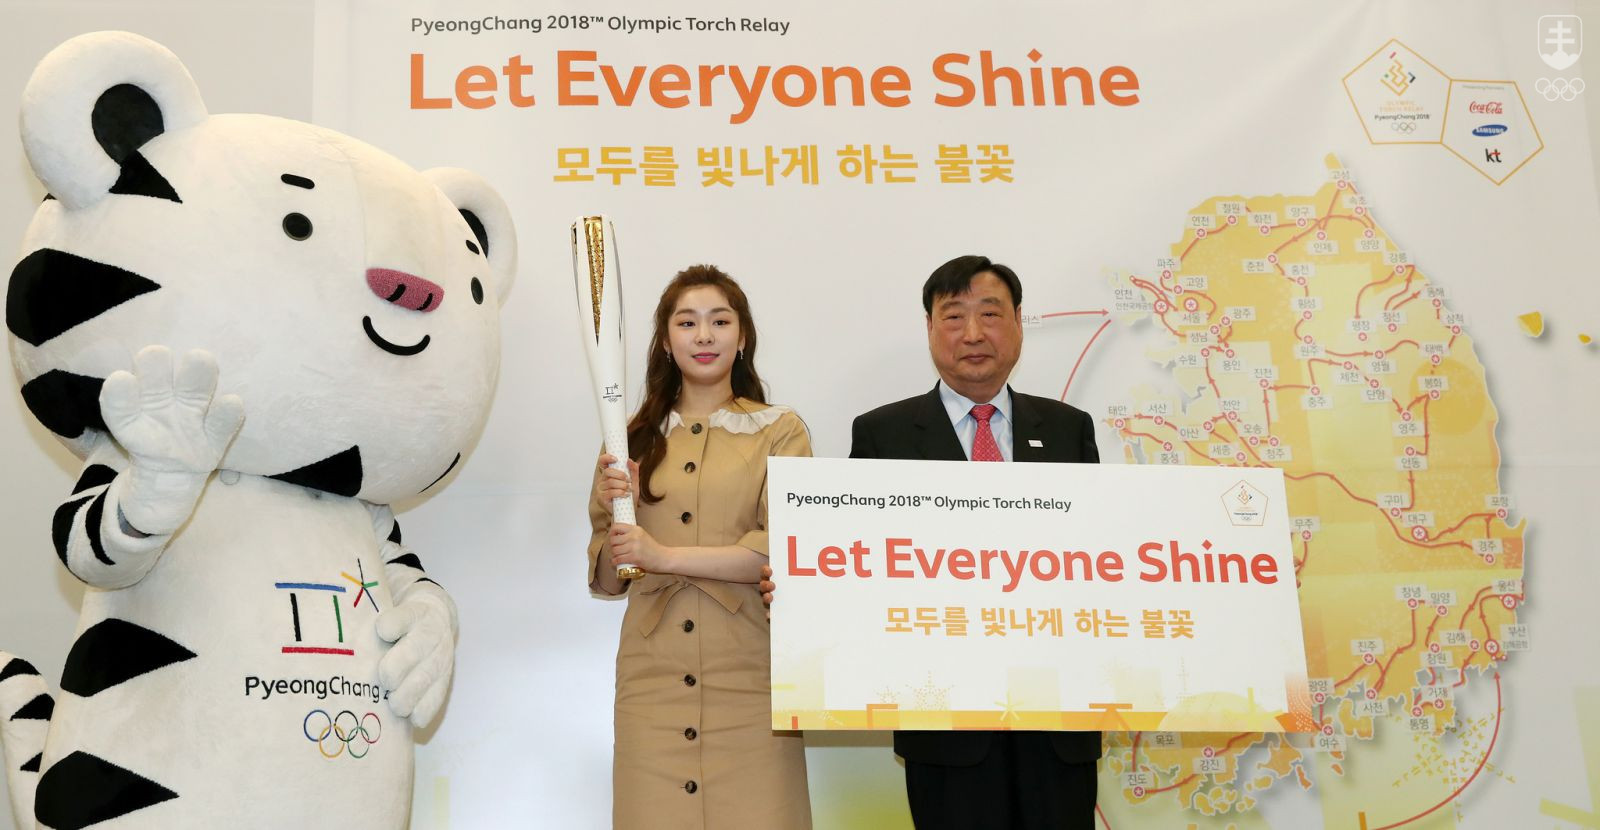 Kórea sa chystá na príchod olympijského ohňa. Do hosttiteľskej krajiny ZOH 2018 ho privezú 1. novembra - presne 100 dní pred slávnostným otvorením hier. FOTO: KOREA FLICKR